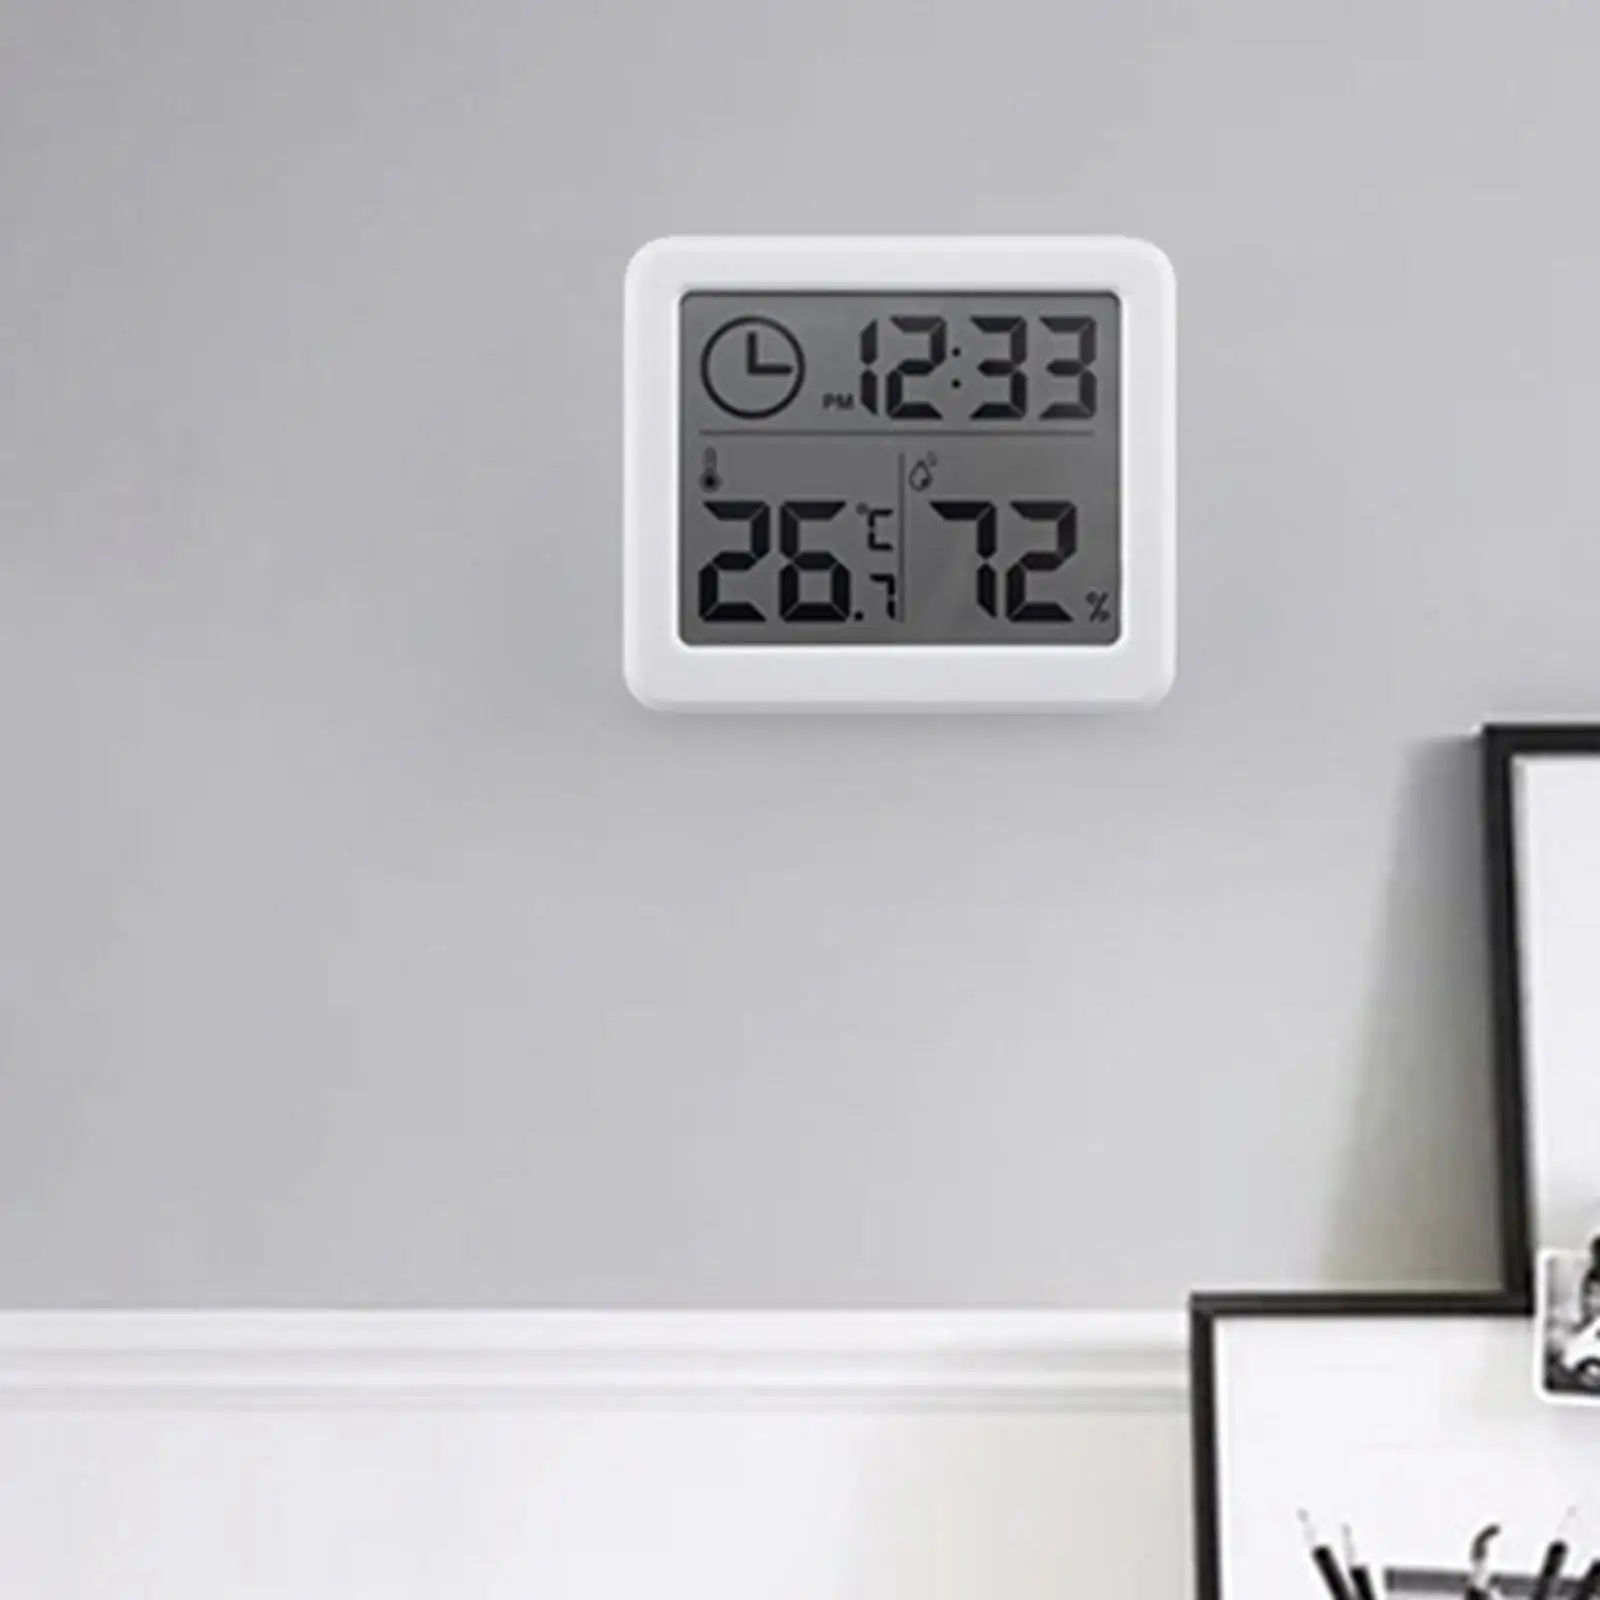  Hygrometer  Clock Function Temperature Battery LCD  Meter for Indoor Restaurants Closet  Room